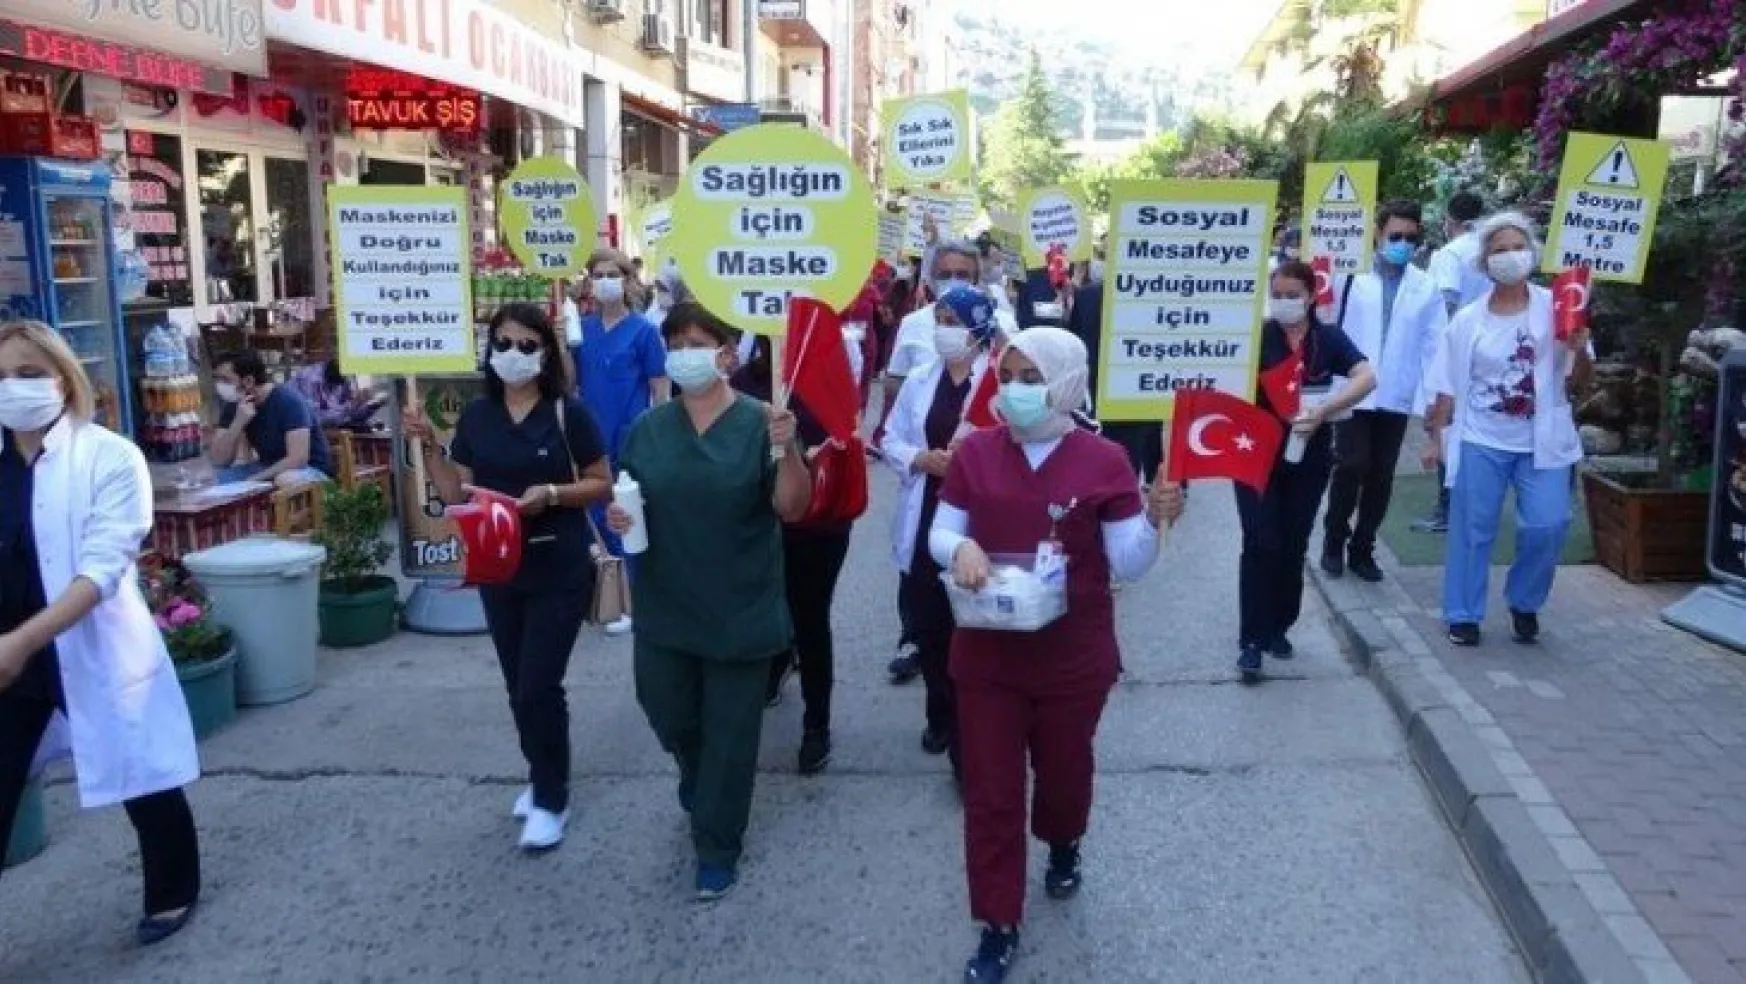 Sağlık çalışanları, maske ve sosyal mesafeye dikkat çekmek için yürüdü